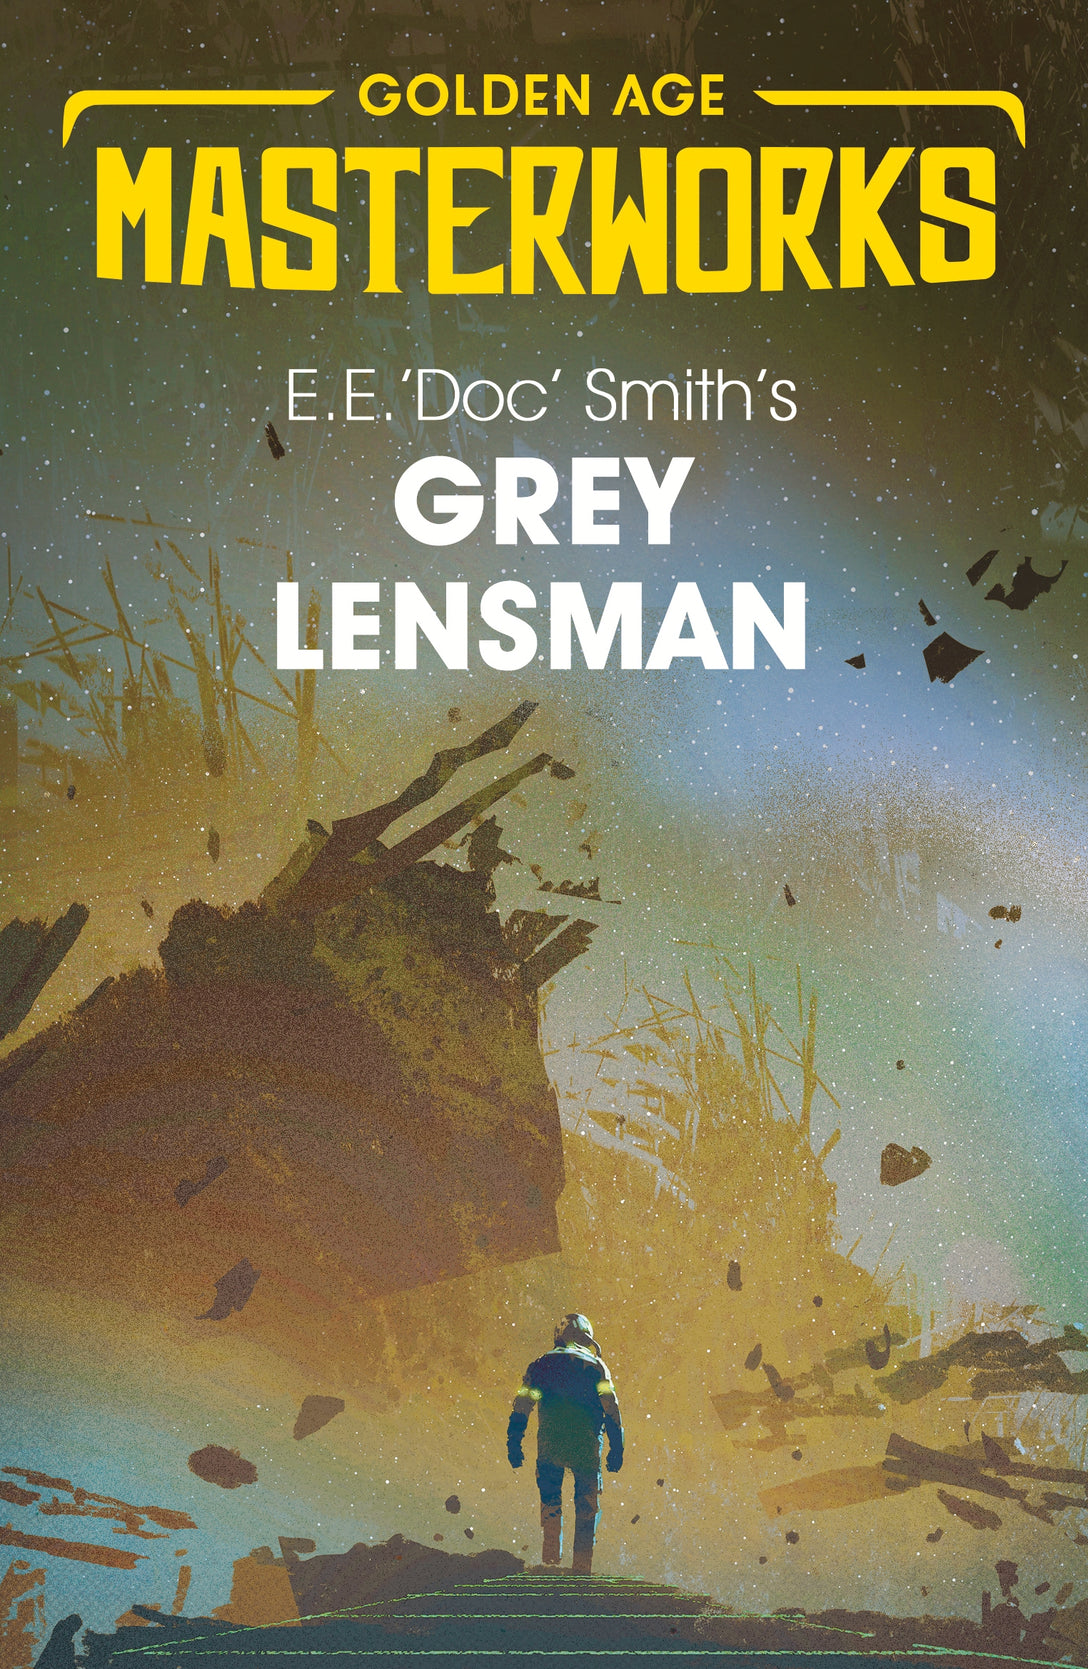 Grey Lensman by E.E. 'Doc' Smith